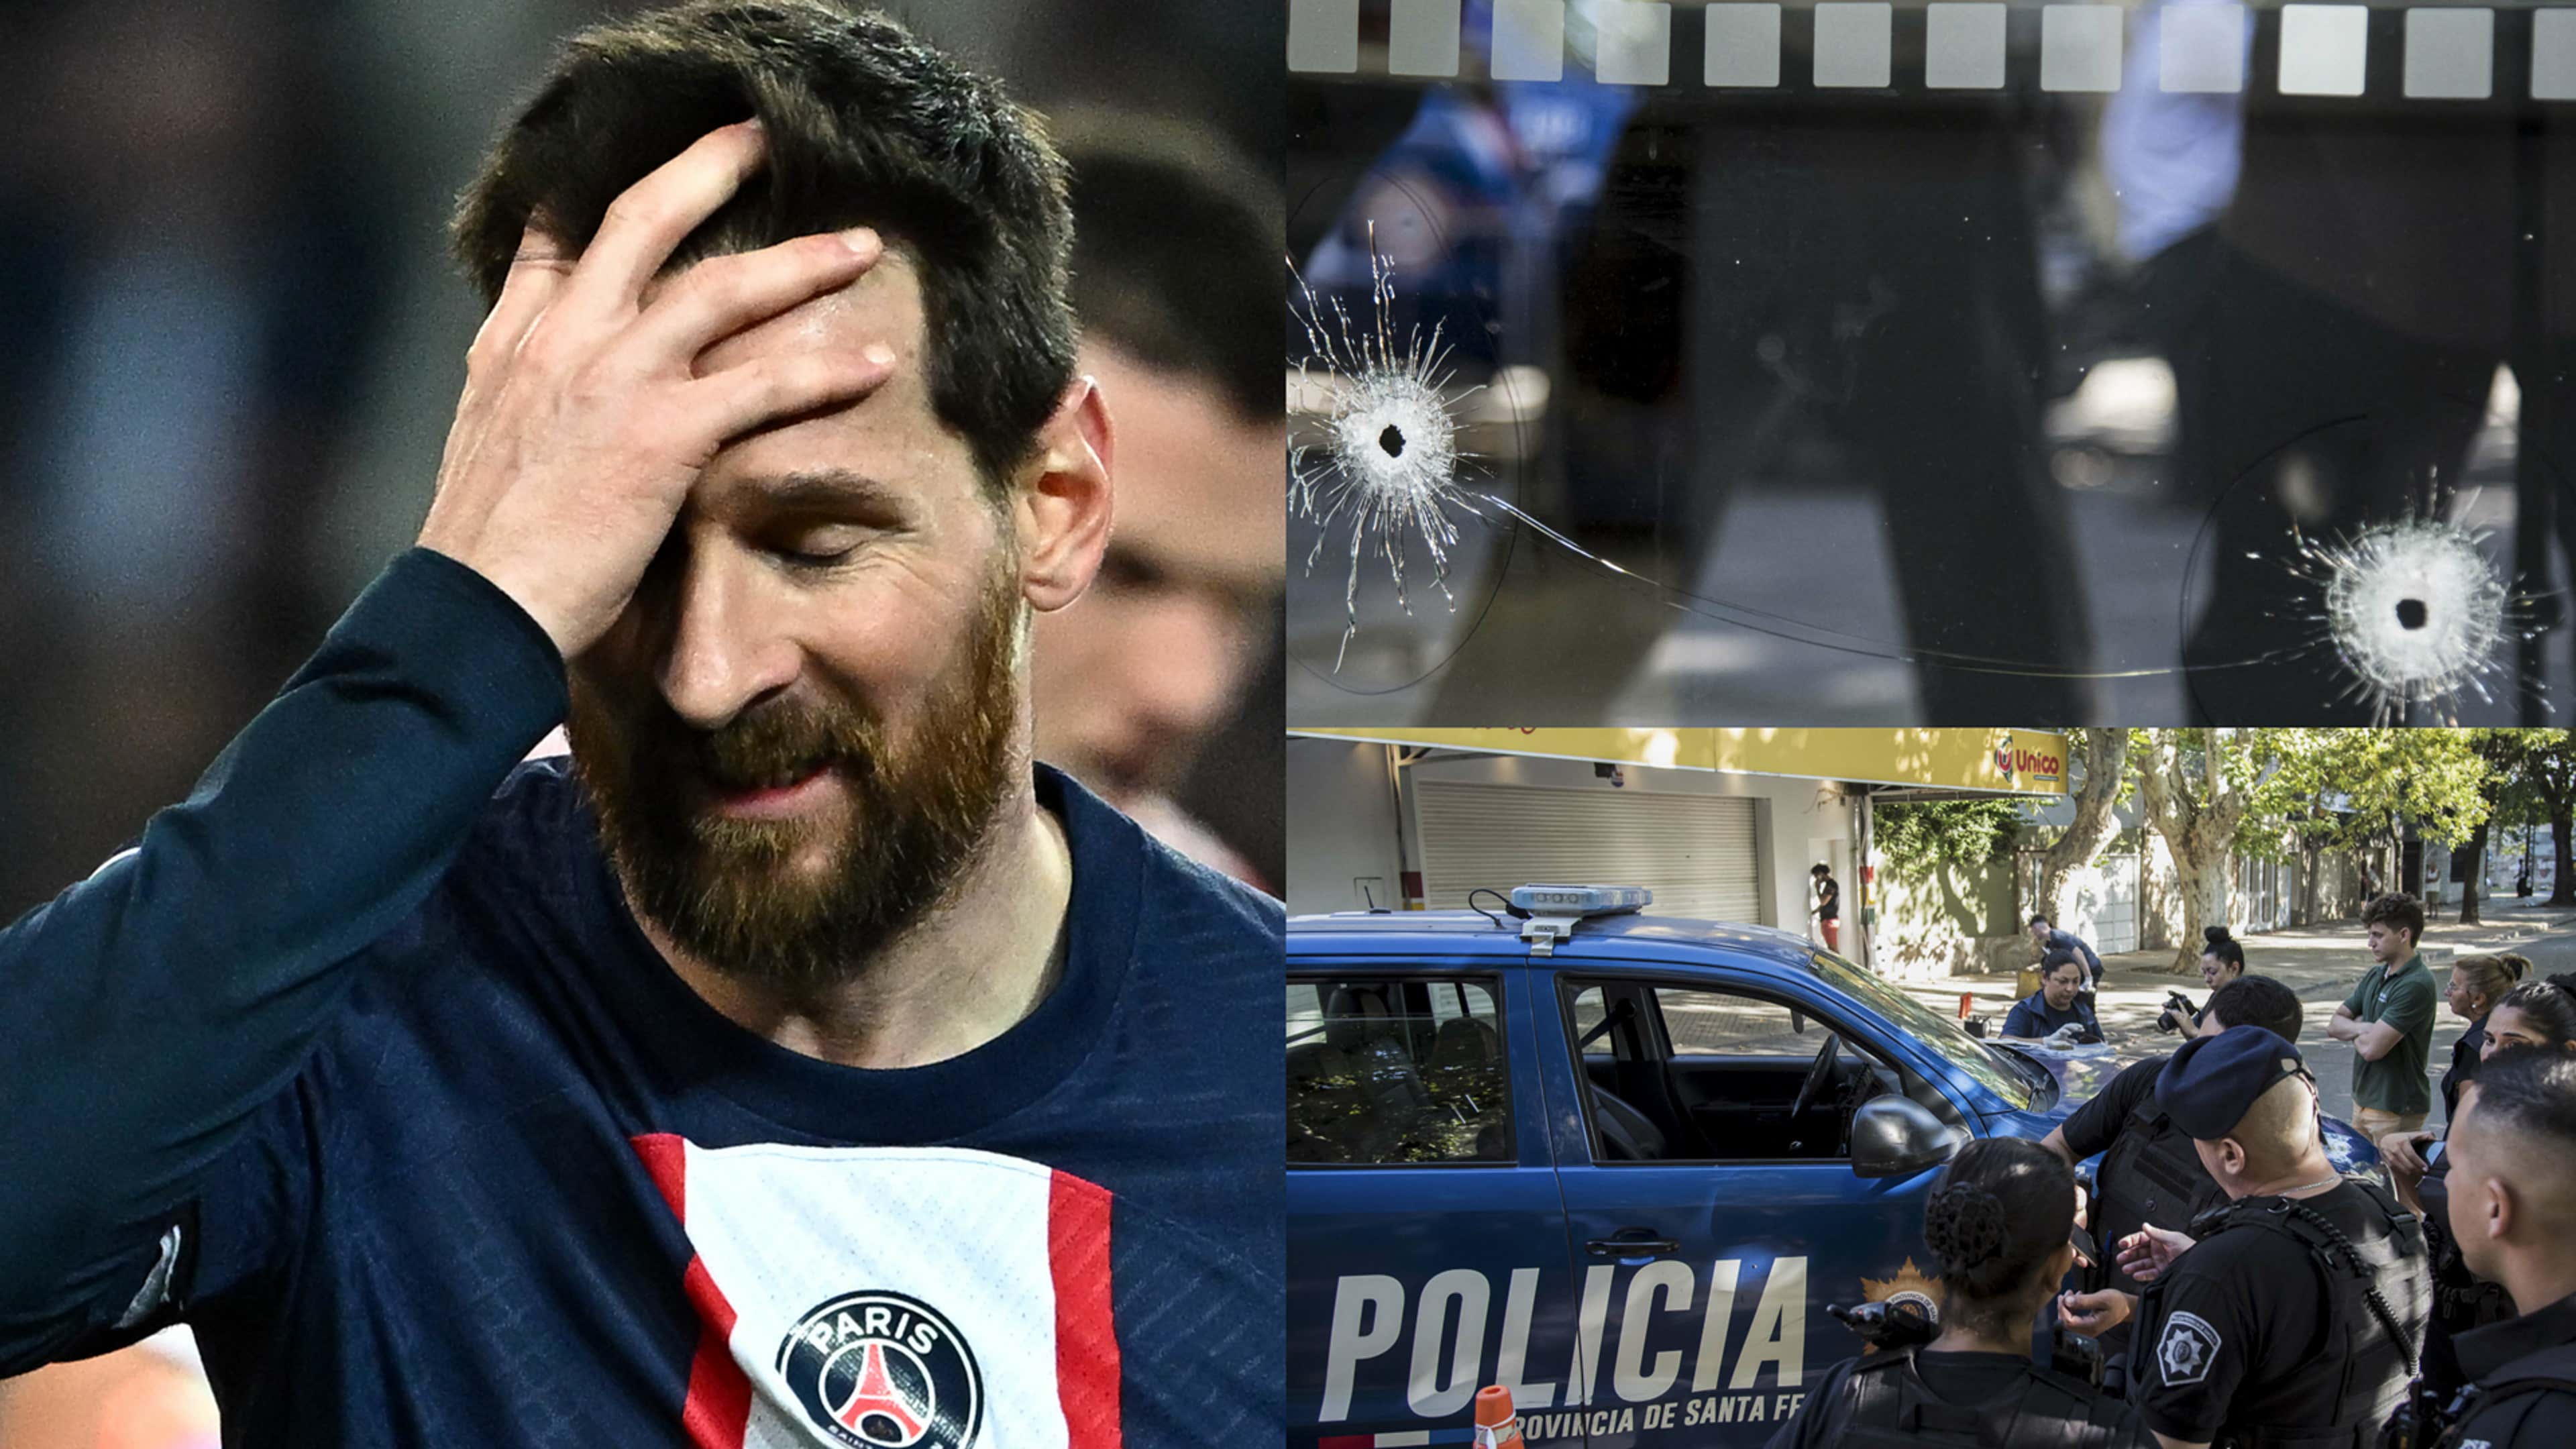 Lionel Messi PSG 2022-23 attack in Rosario, Argentina split